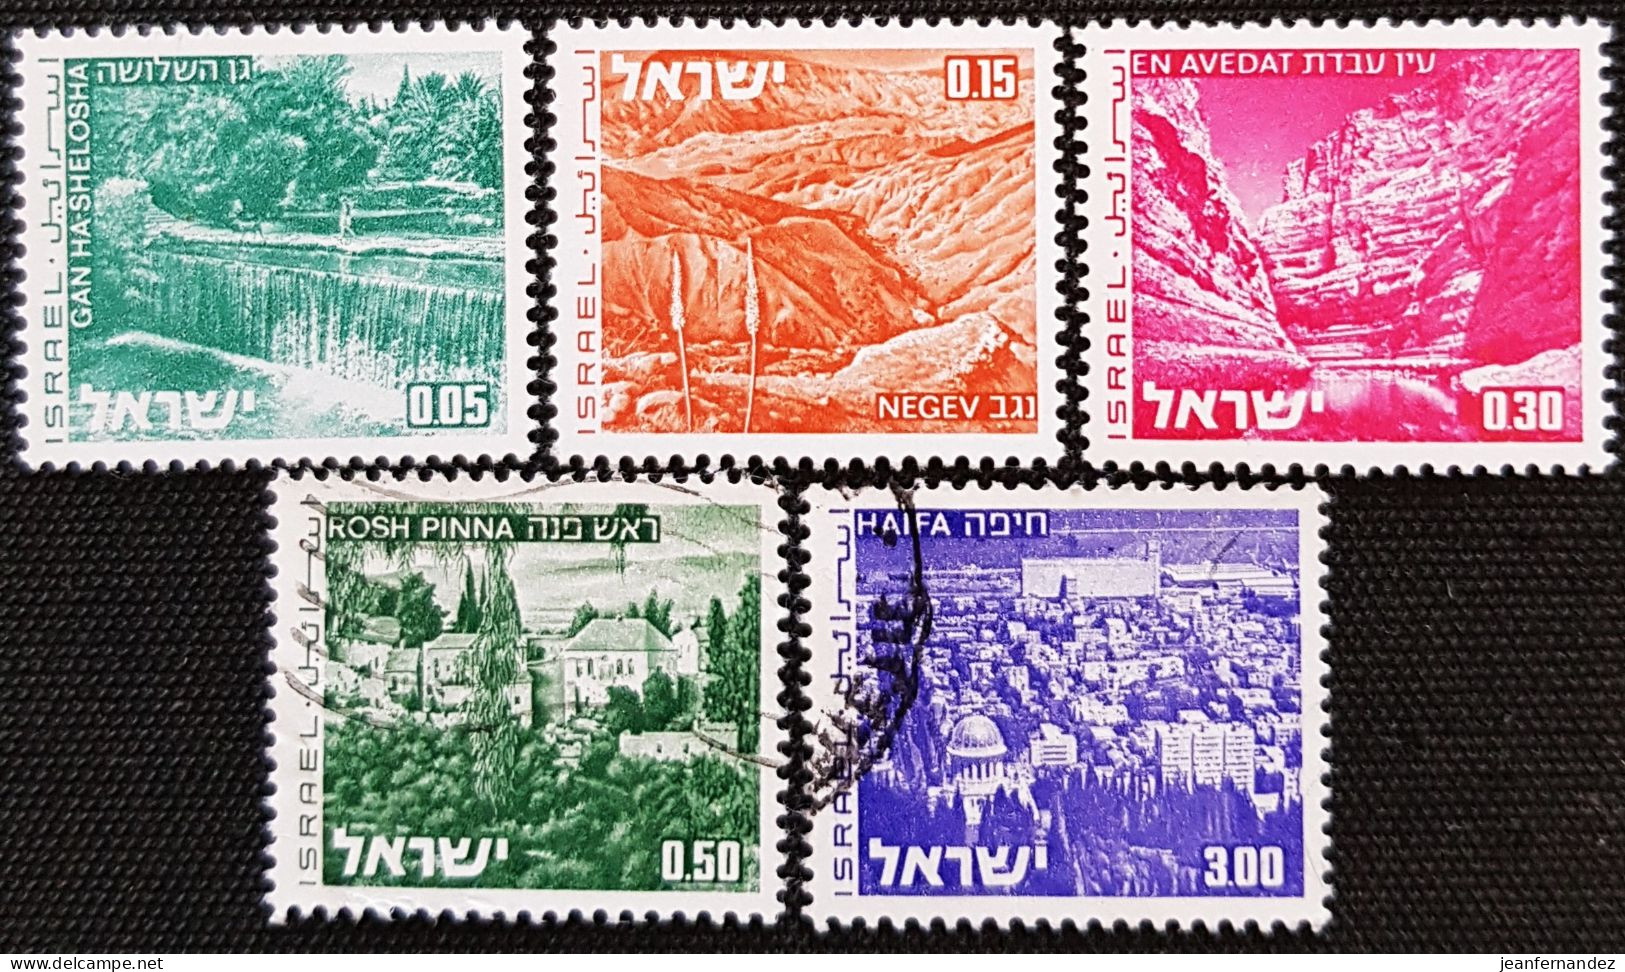 Israel 1971 -1979 Landscapes  Stampworld N° 524_525_528_530_536 Les 3 Premiers Sont Neufs Sans Trace De Charnière - Usados (sin Tab)